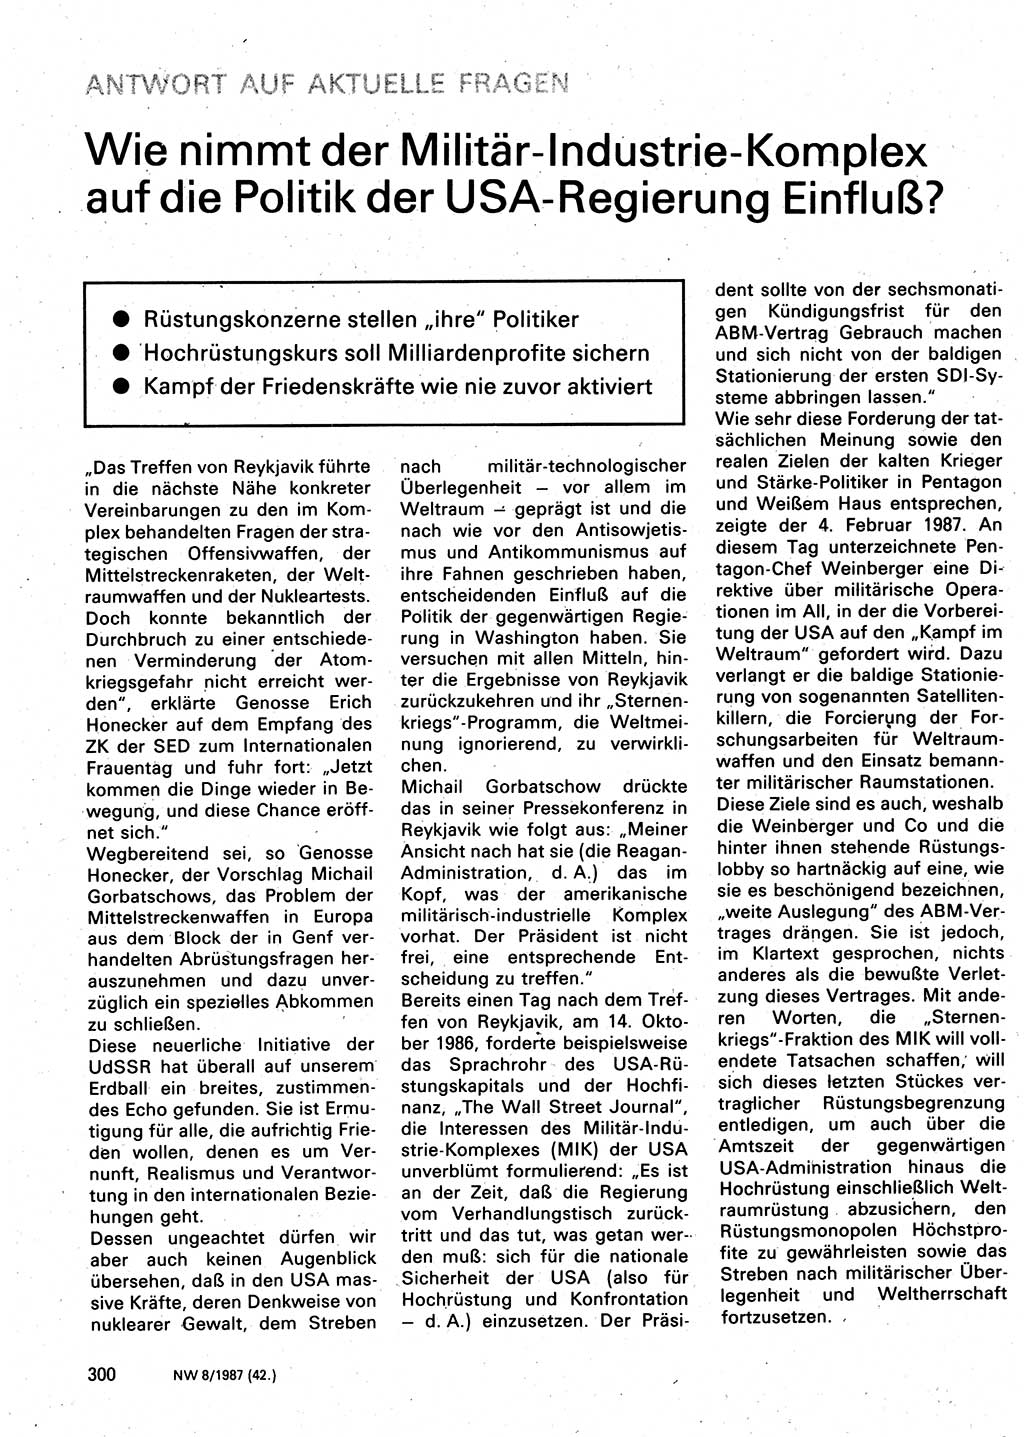 Neuer Weg (NW), Organ des Zentralkomitees (ZK) der SED (Sozialistische Einheitspartei Deutschlands) für Fragen des Parteilebens, 42. Jahrgang [Deutsche Demokratische Republik (DDR)] 1987, Seite 300 (NW ZK SED DDR 1987, S. 300)